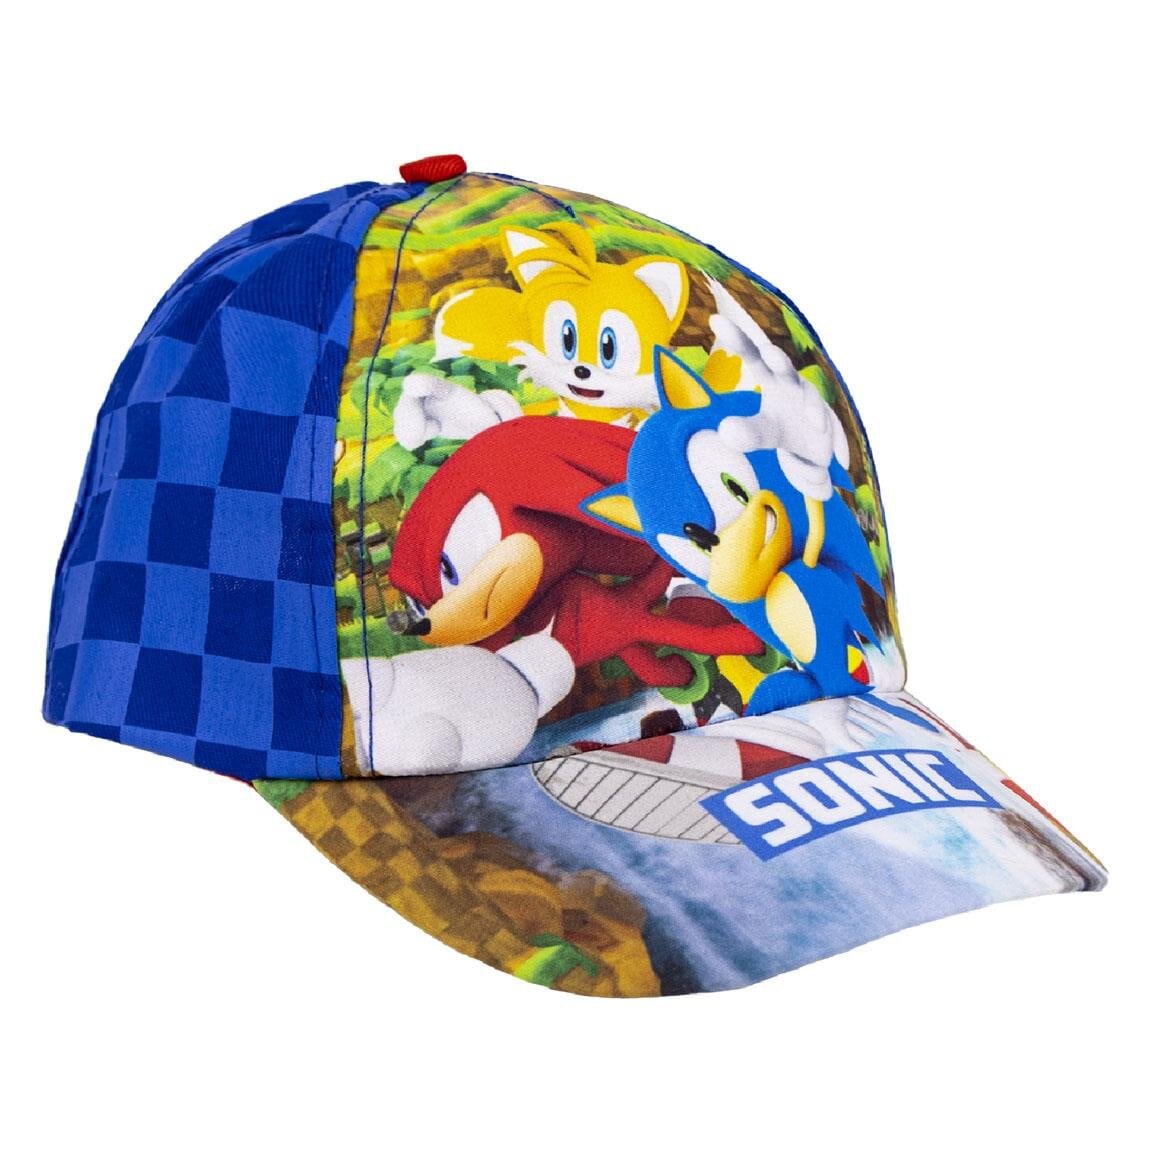 Sonic the Hedgehog - Kappe für Kinder